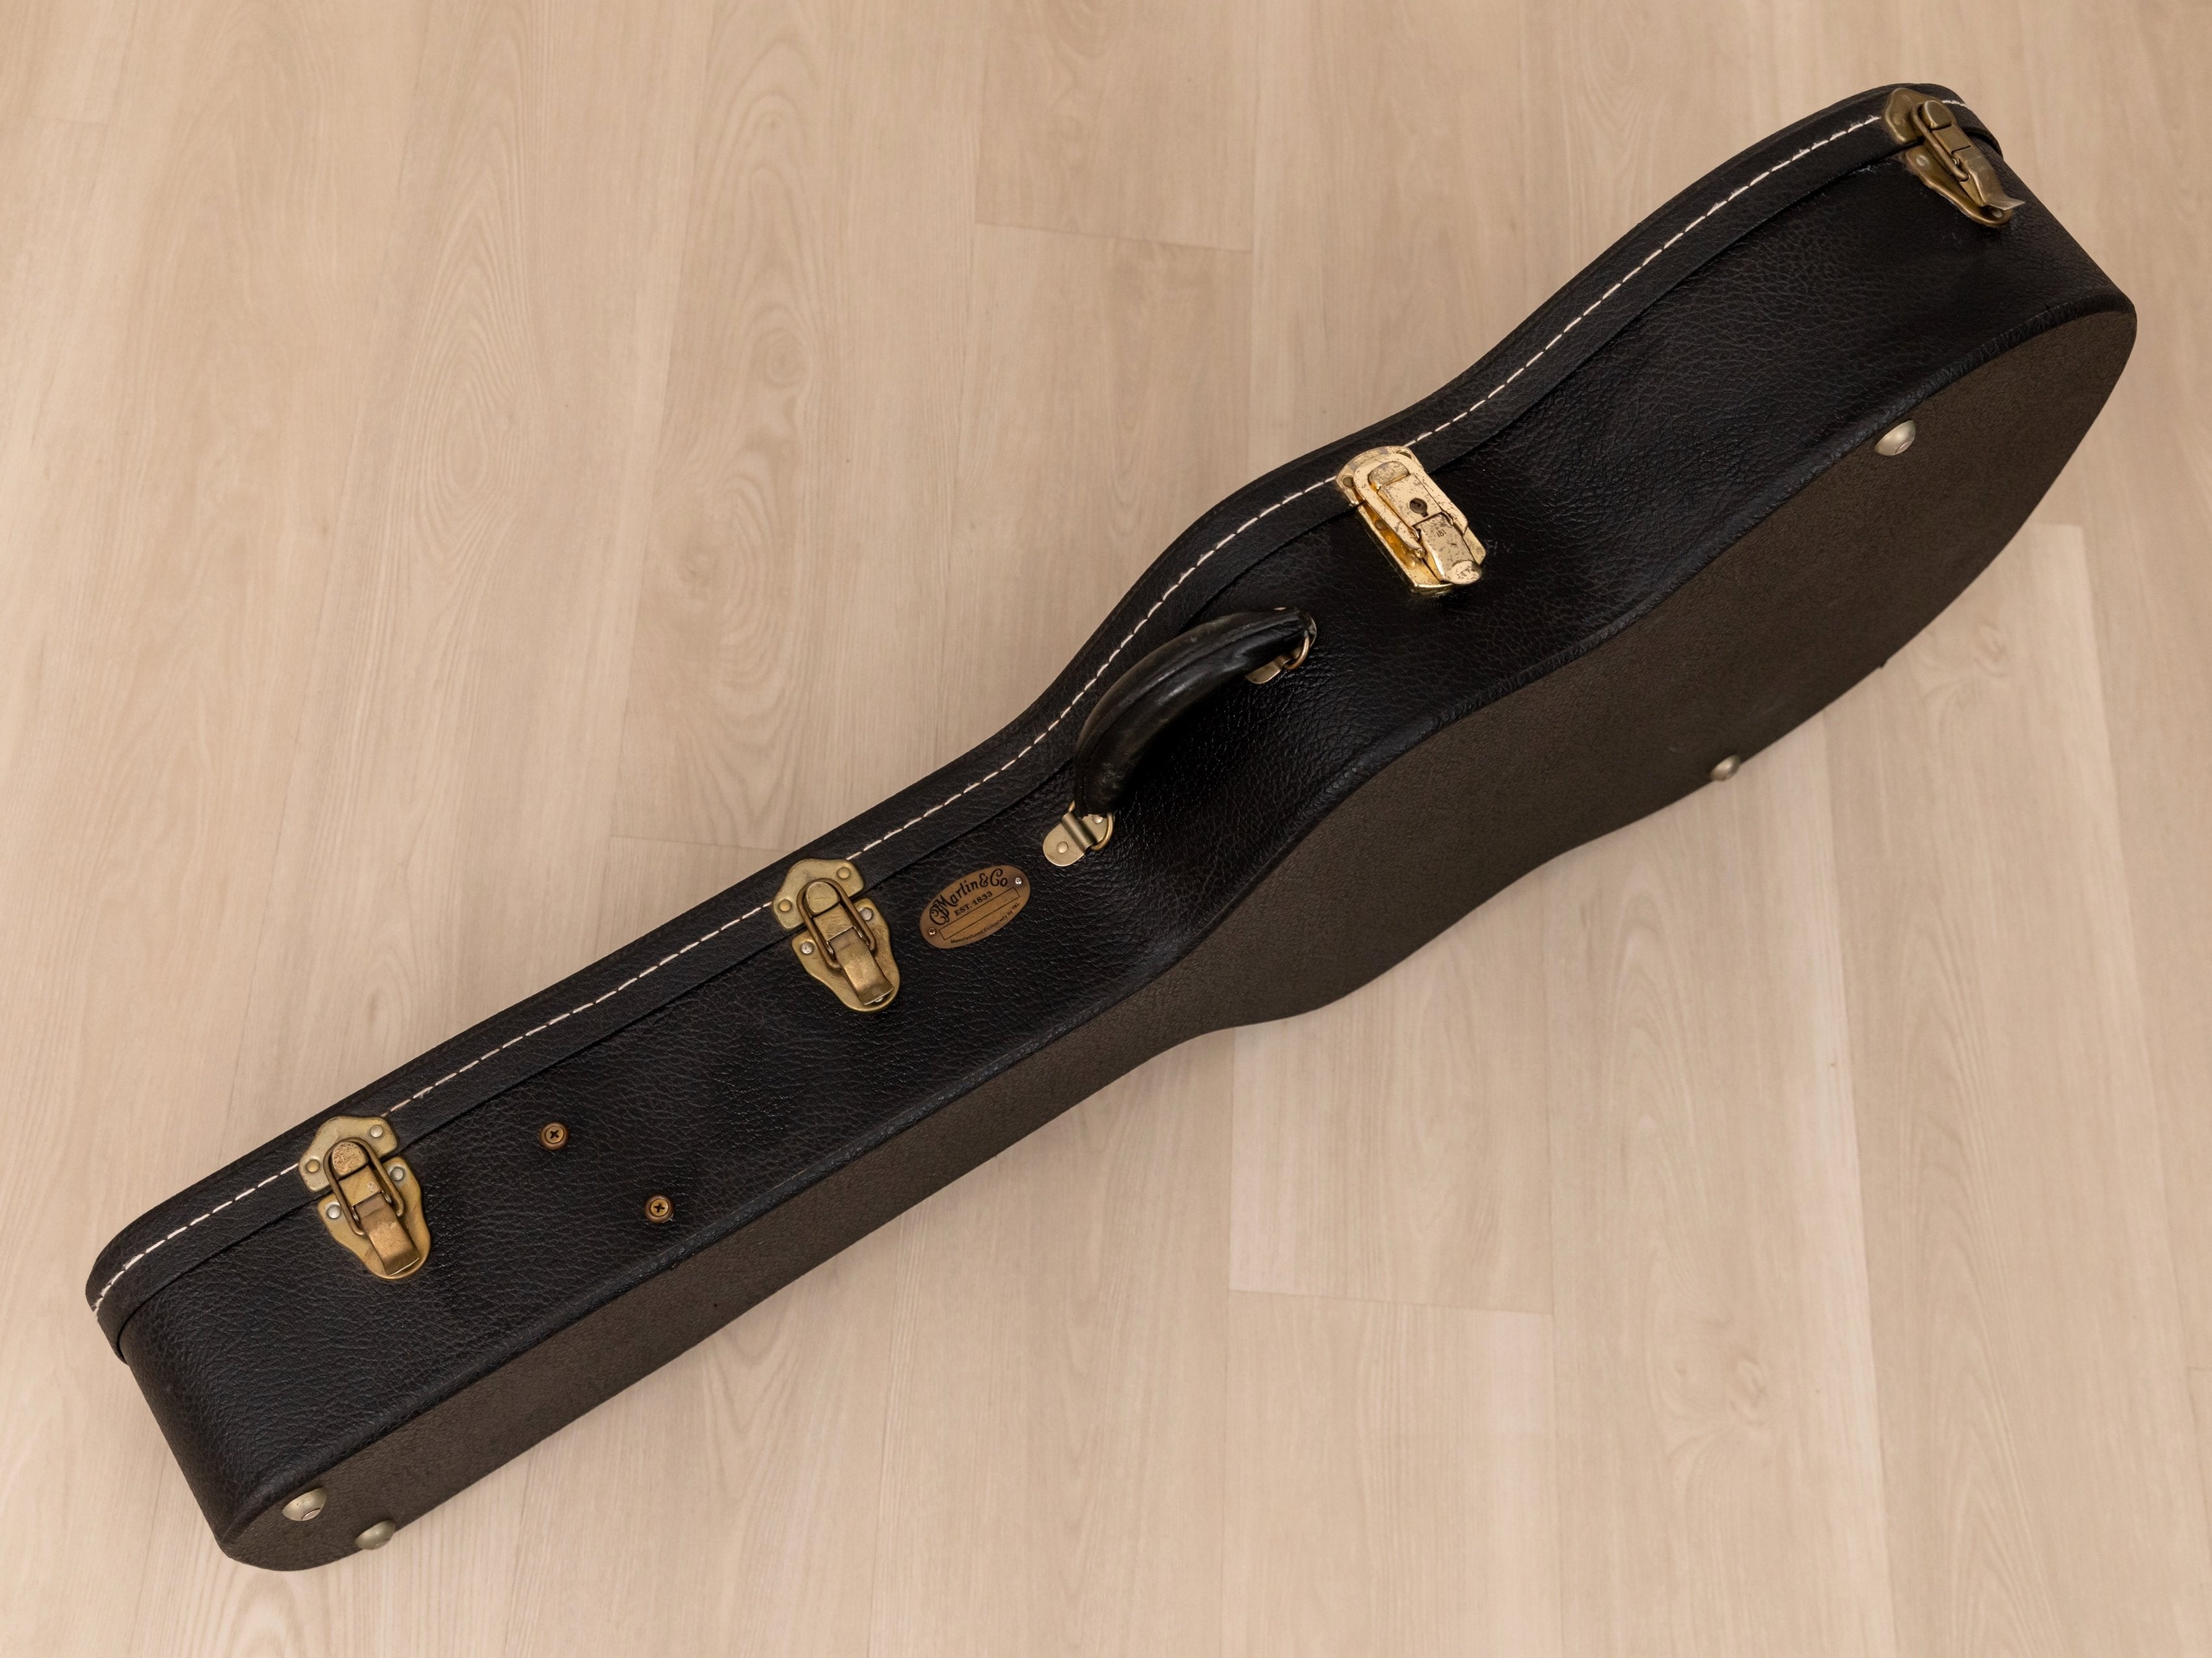 2001 Martin OM-28V Cutaway Herringbone Custom-Ordered One-Off Acoustic Guitar w/ Pickup, Case